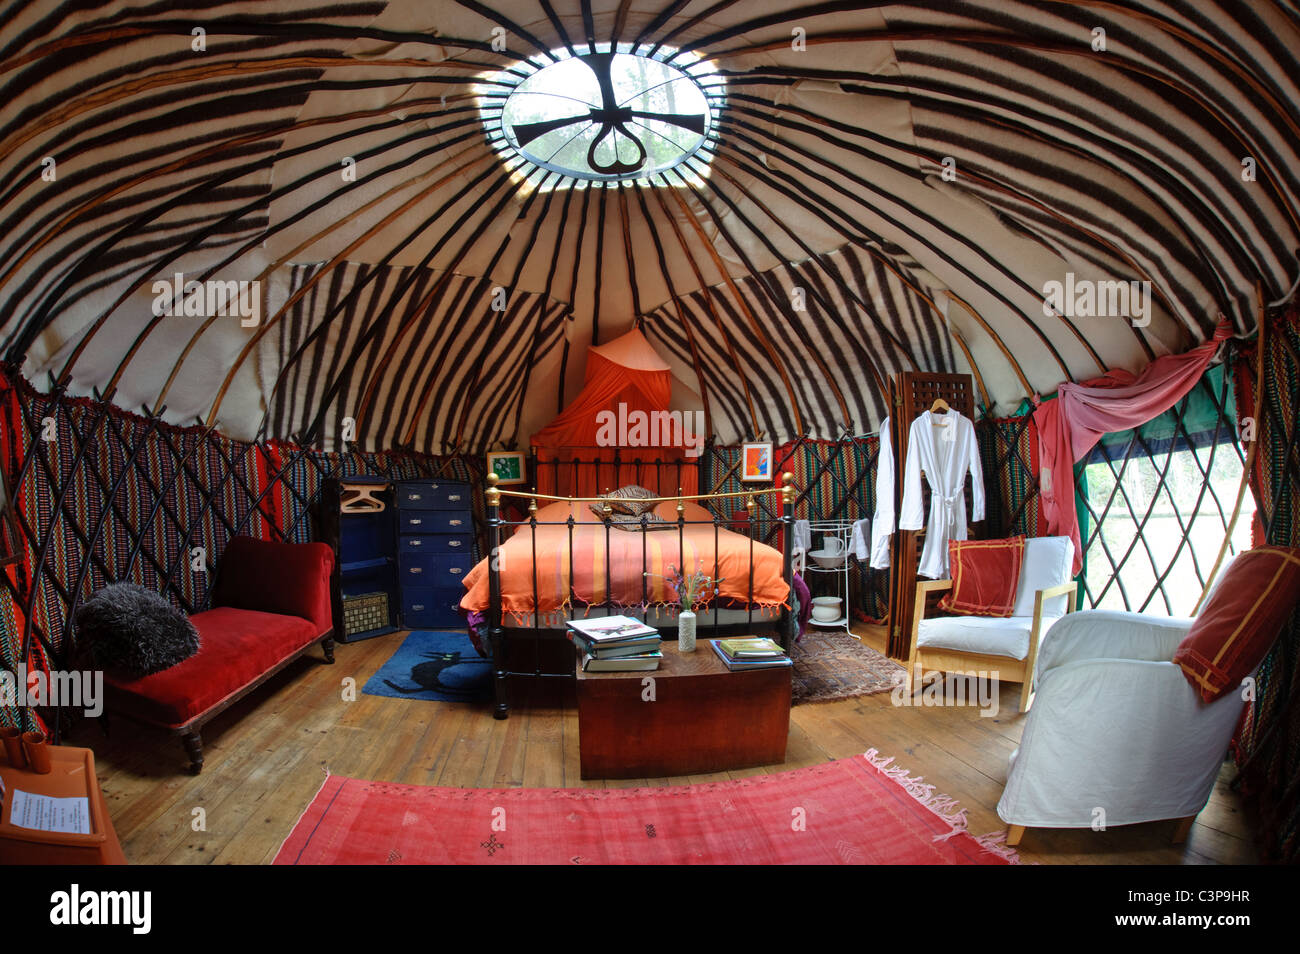 Yurt interior Stock Photo